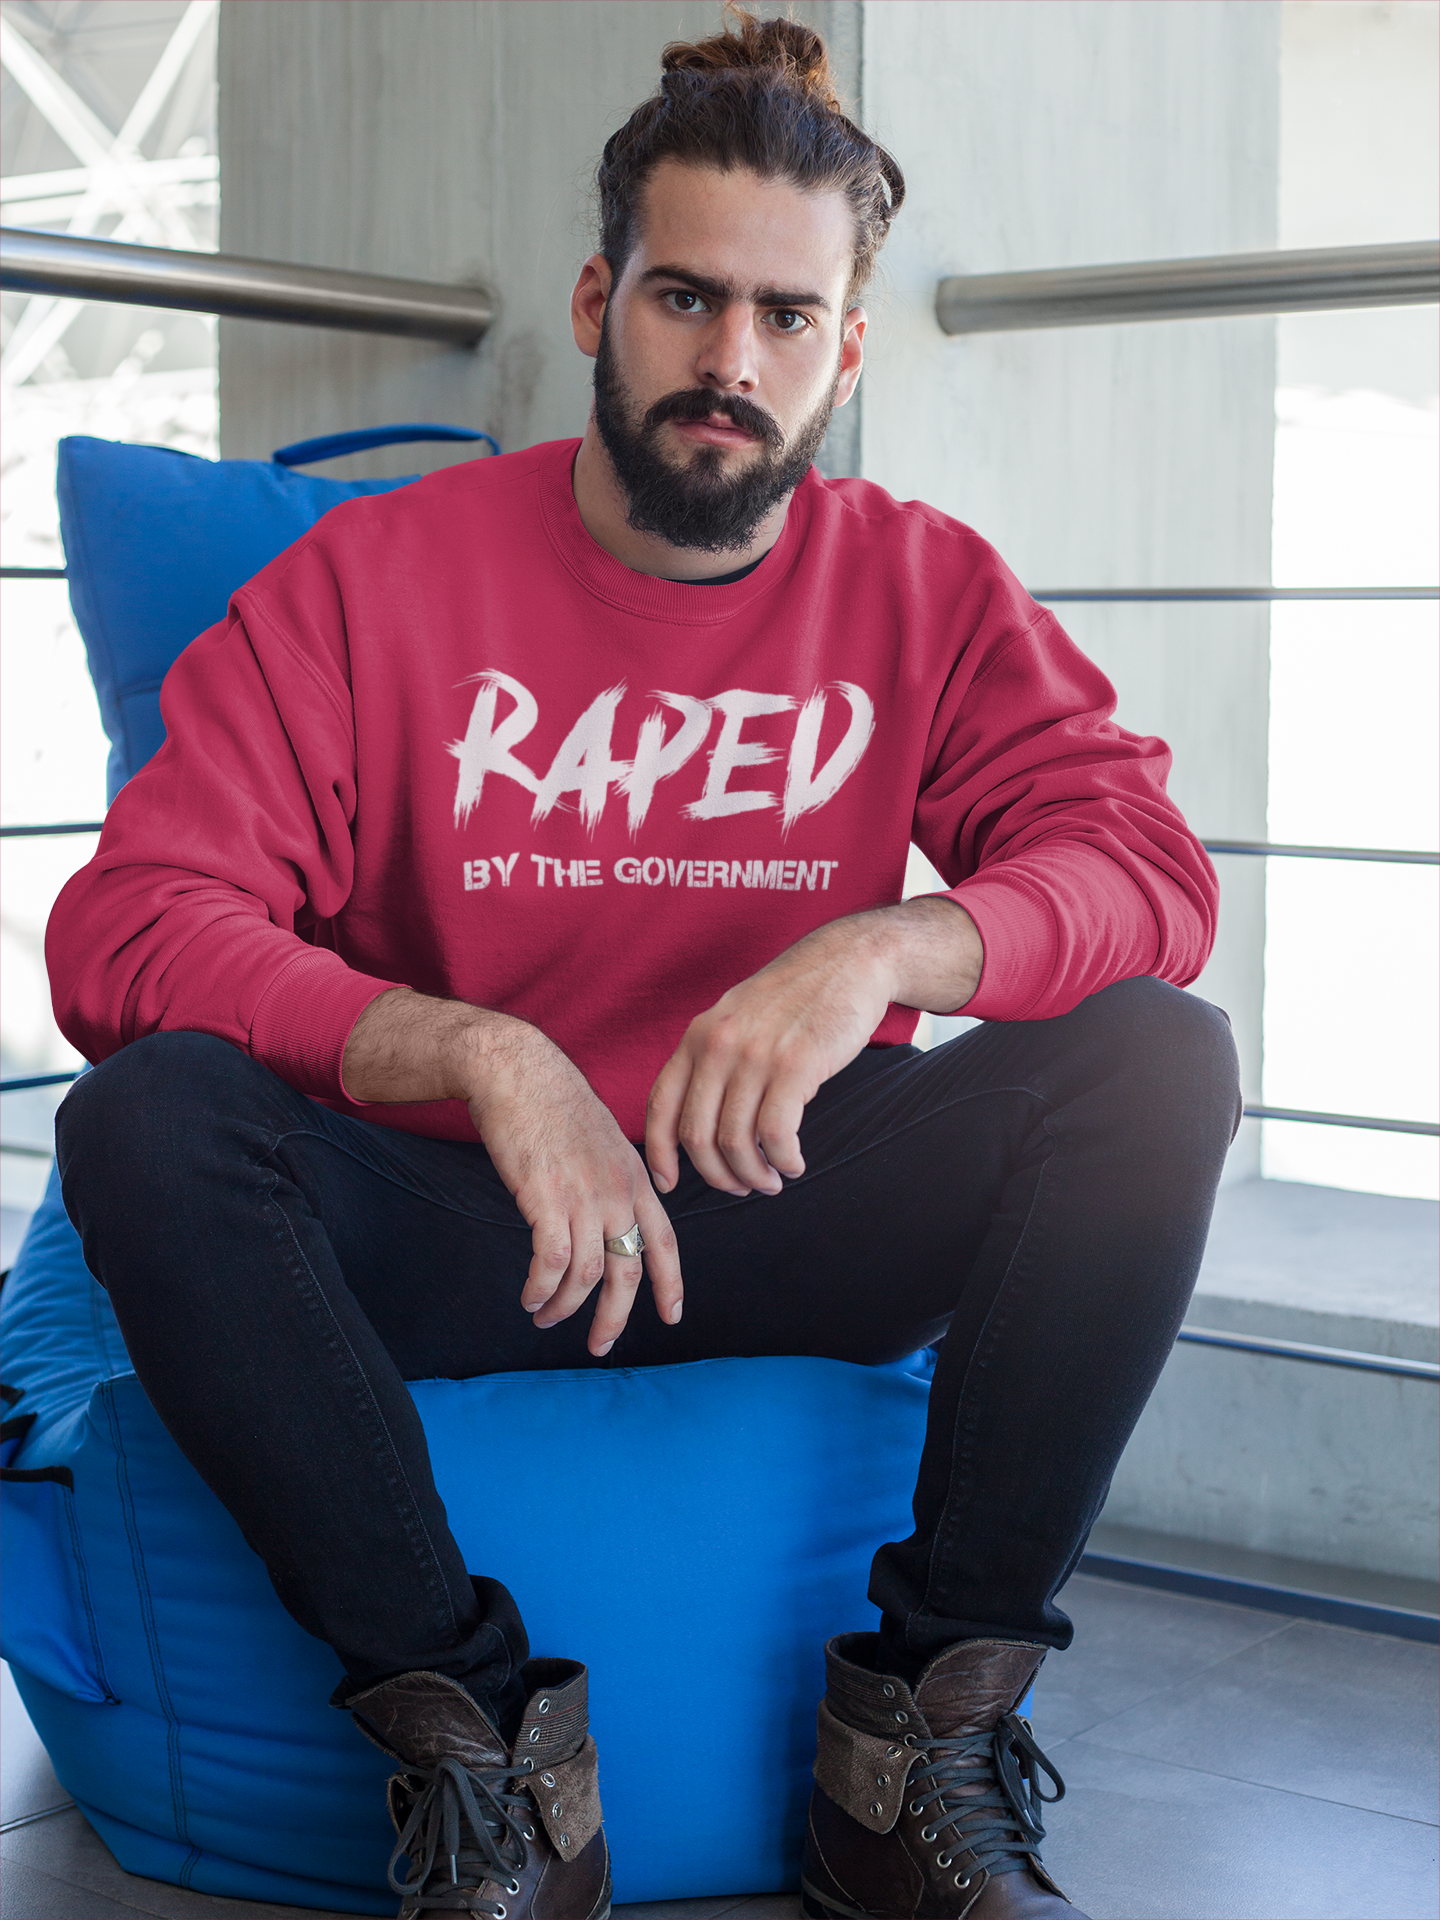 Jag är våldtagen av Regeringen. Sweatshirt med text Raped By The Government. Unisexmodell